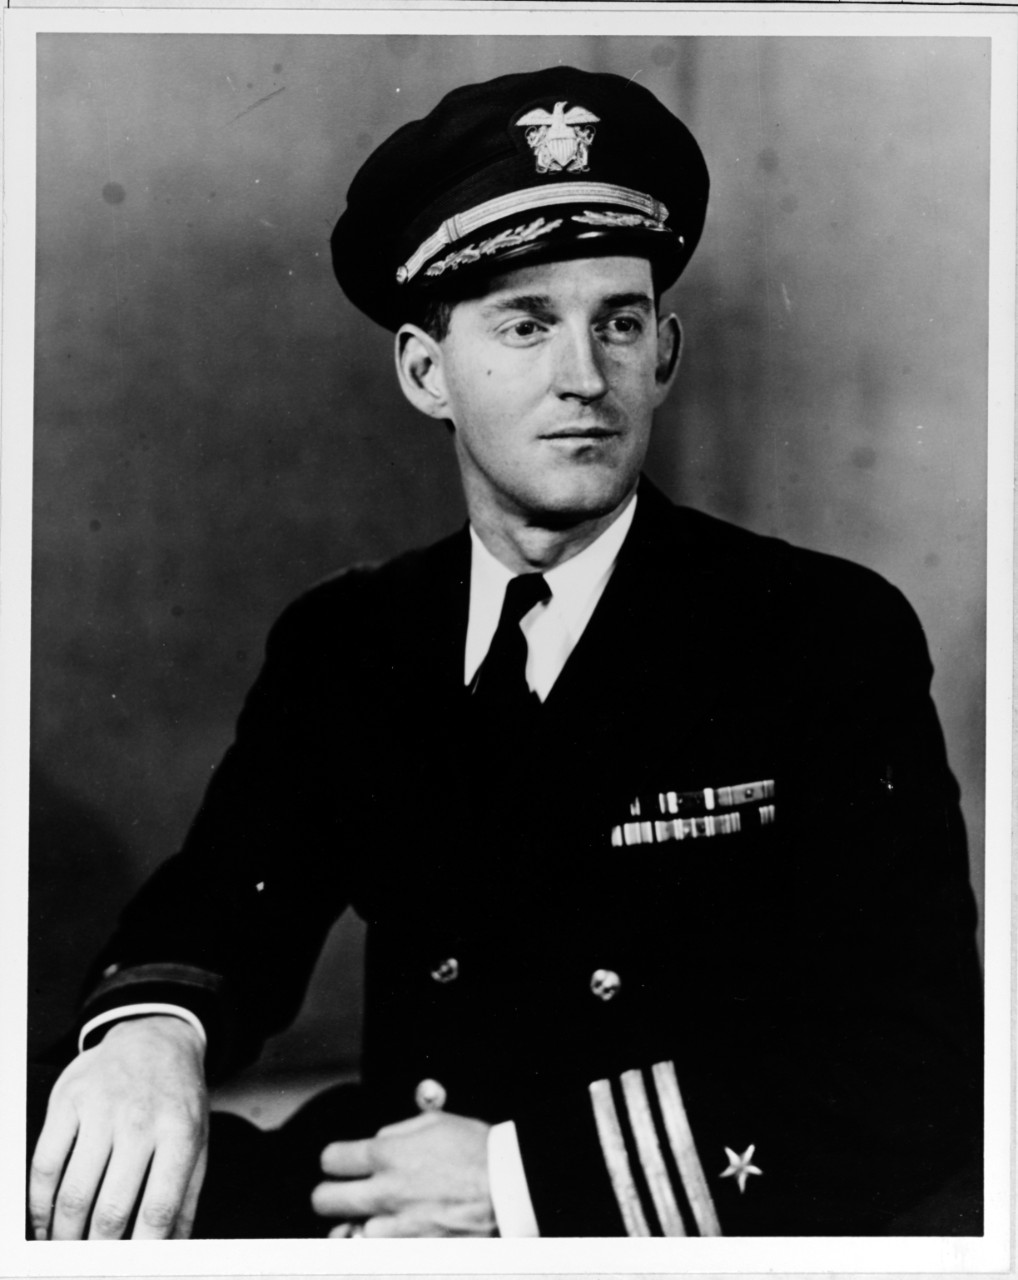 Commander H.G. Bowen, Jr.